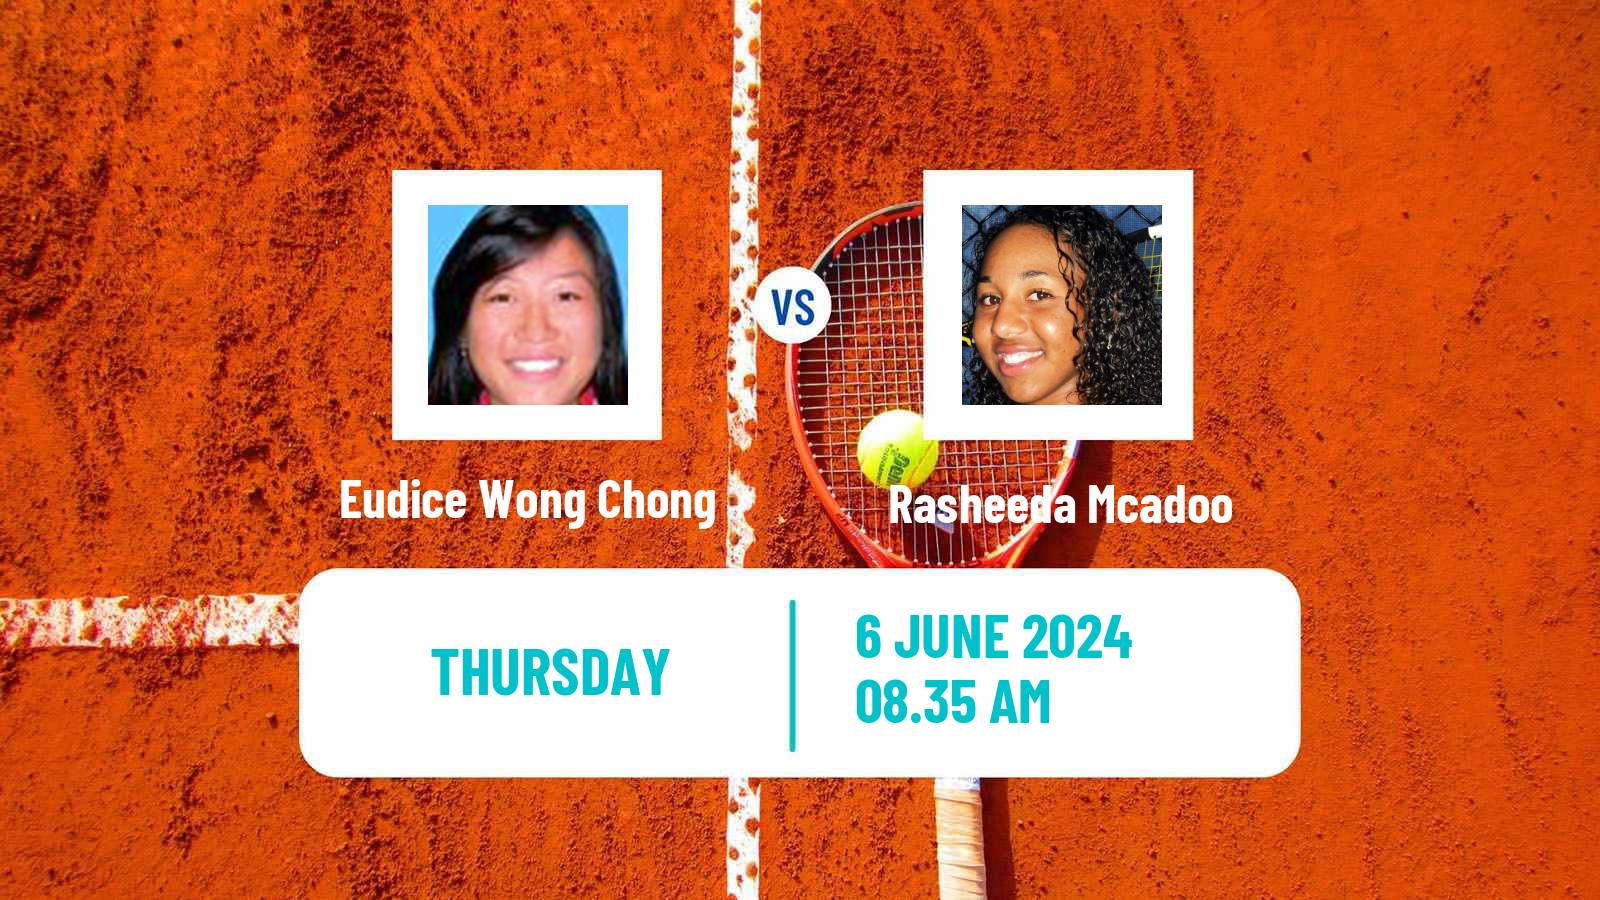 Tennis ITF W50 Montemor O Novo 2 Women Eudice Wong Chong - Rasheeda Mcadoo